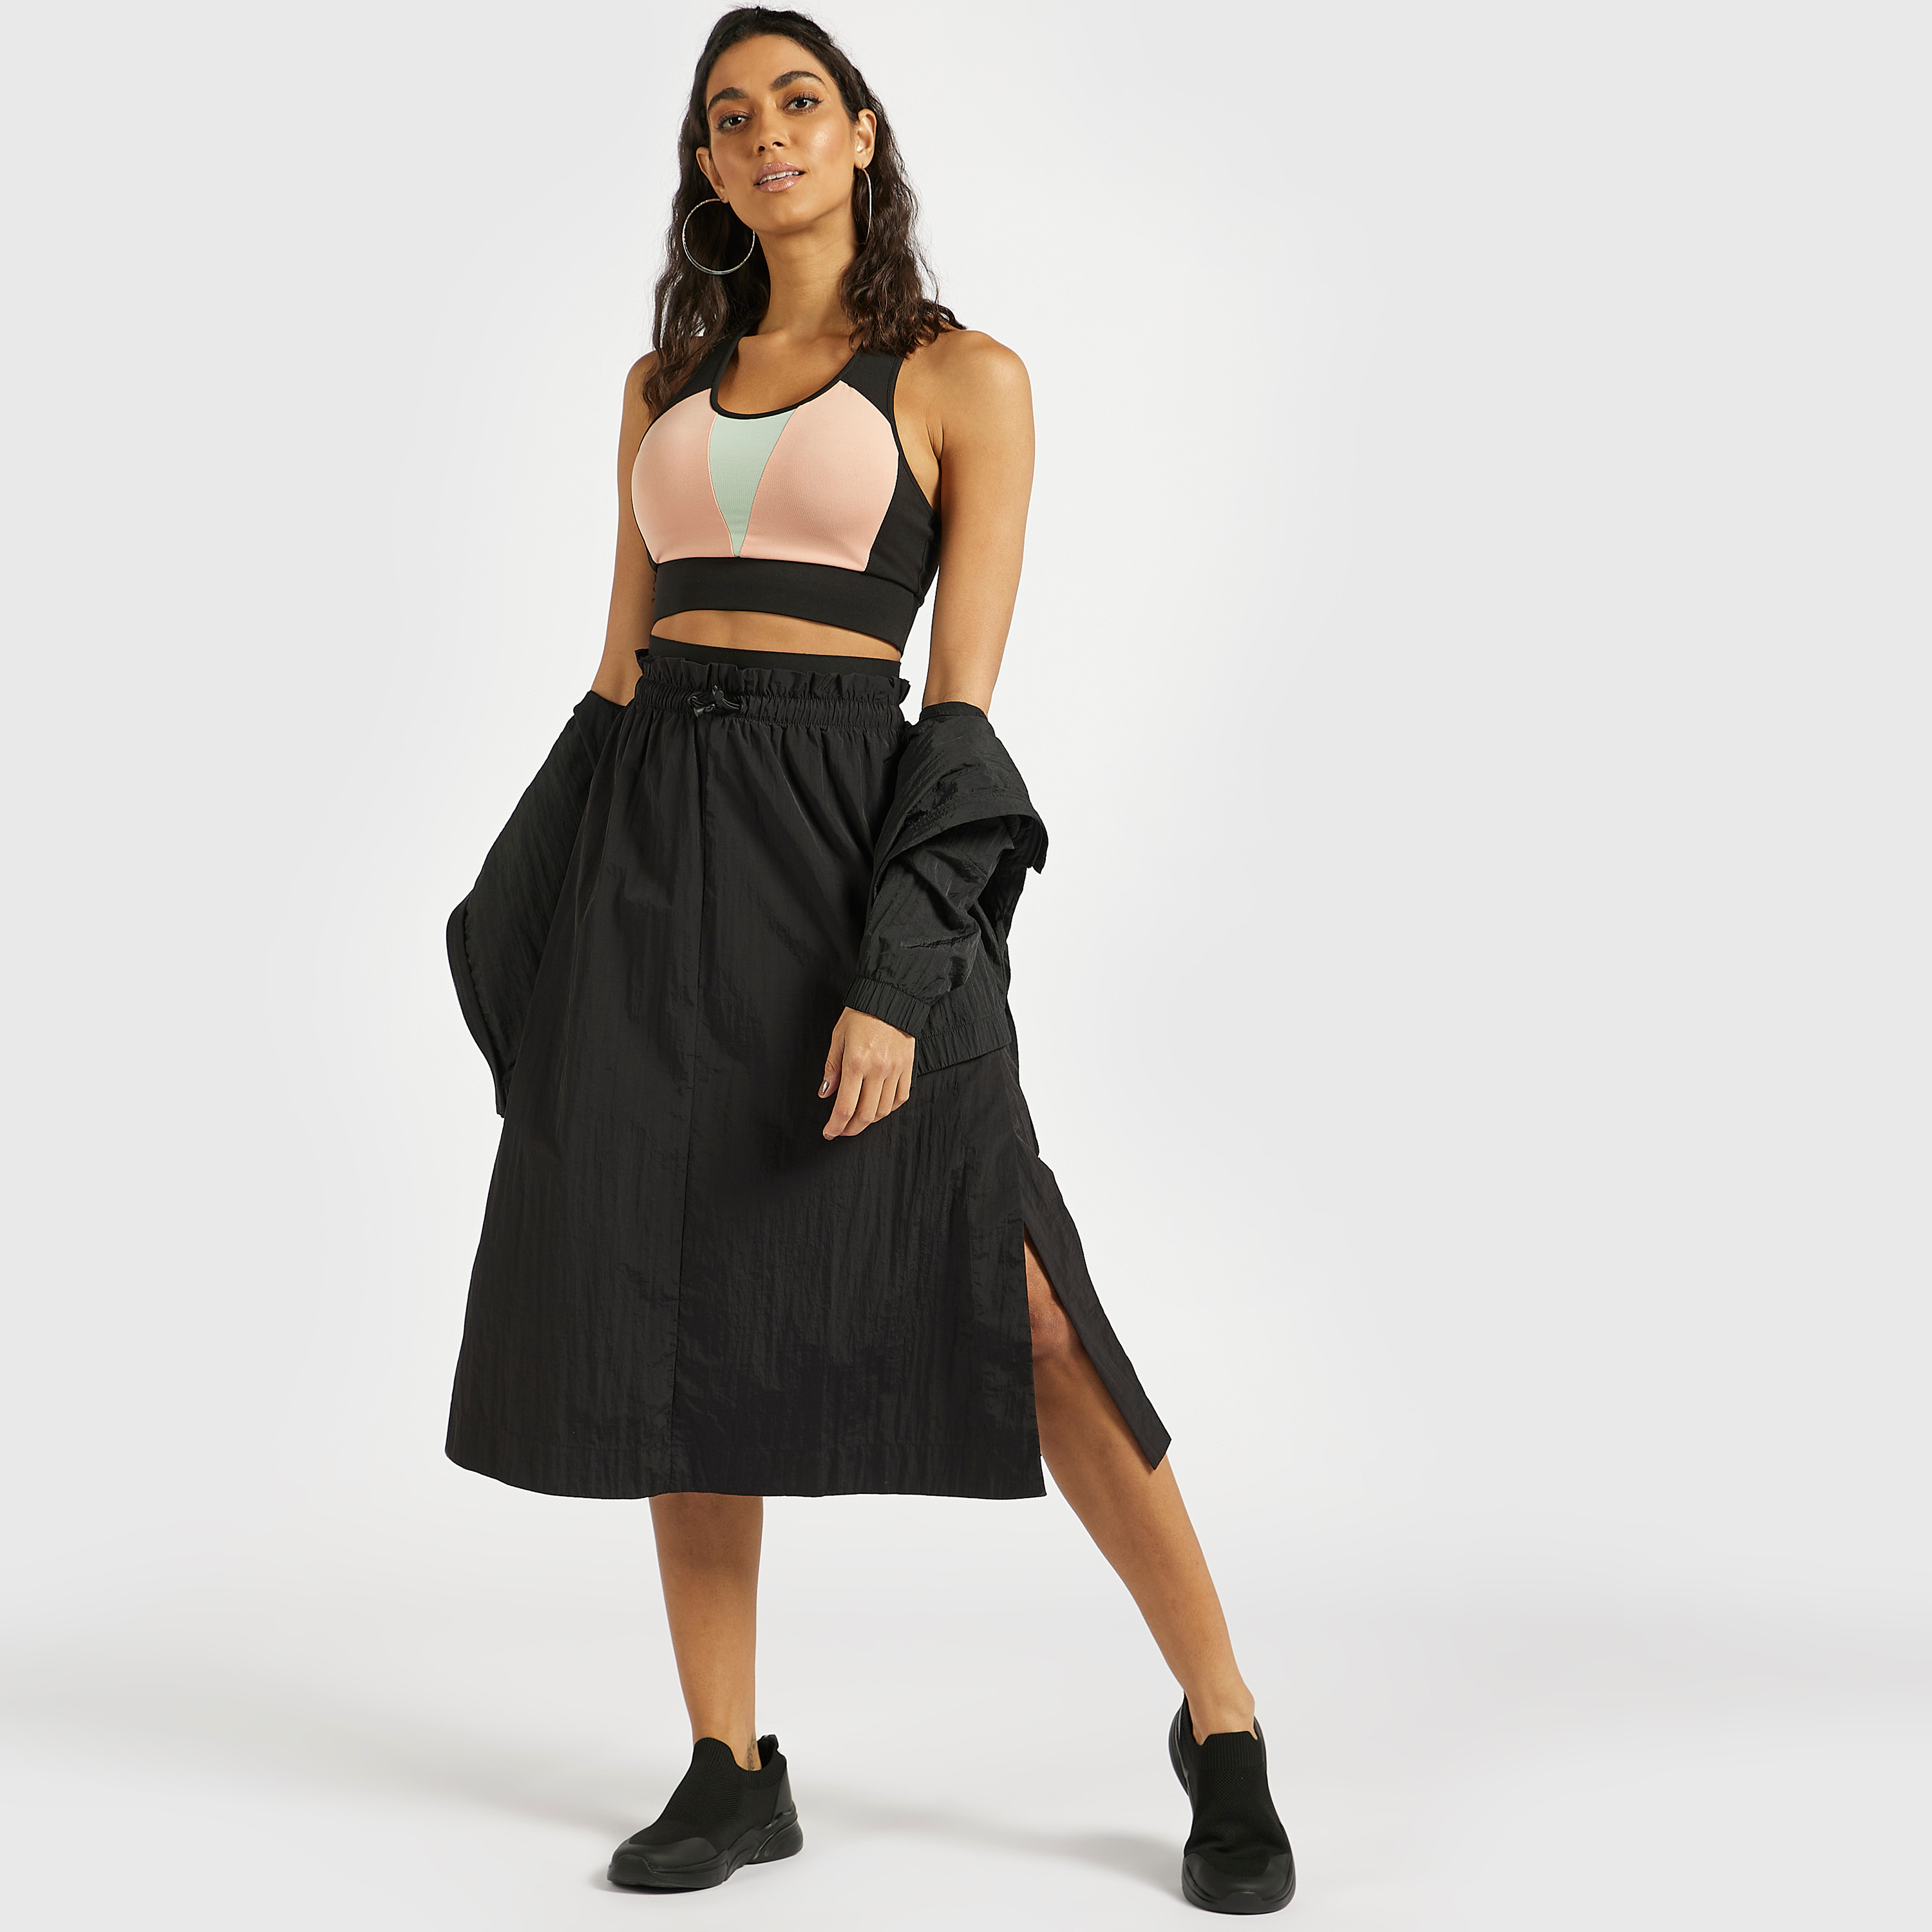 Never Been Better - Midi Skirt for Women | Roxy